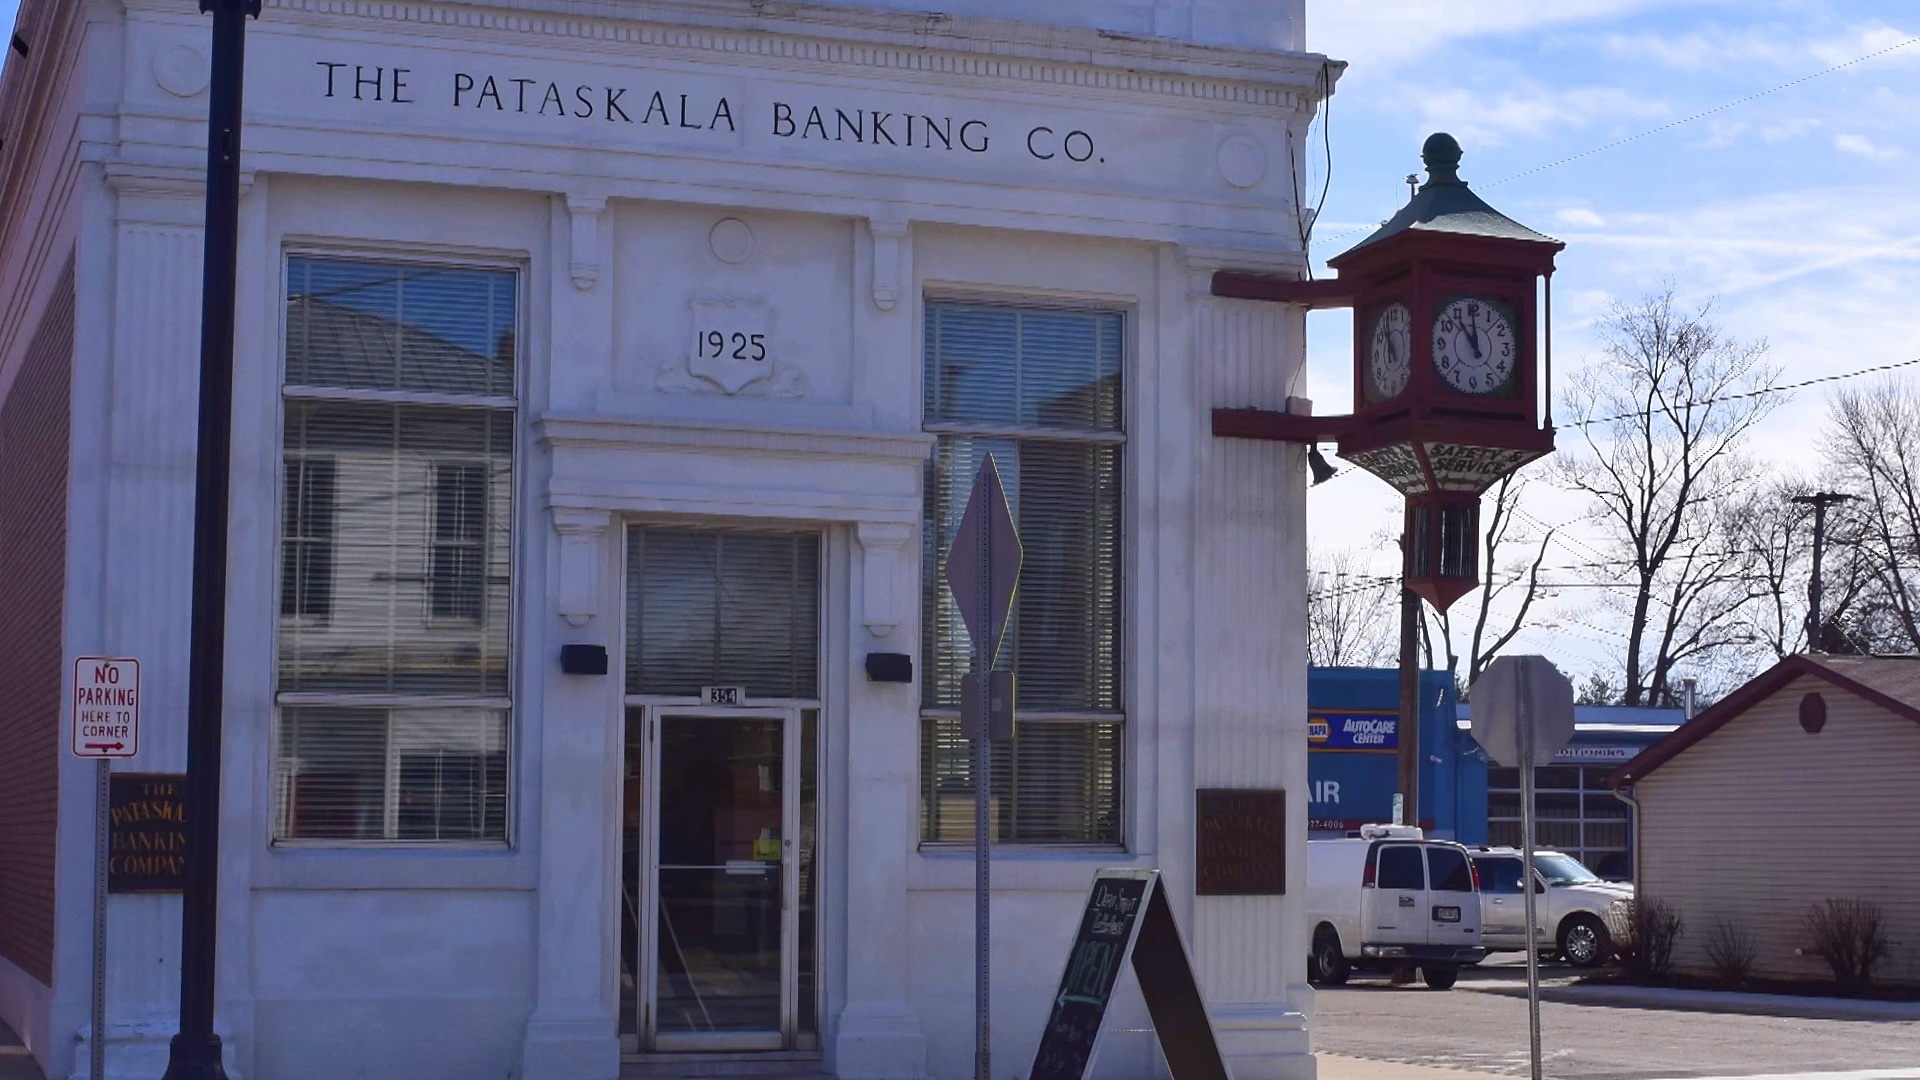 The Pataskala Banking Co at 6 minutes drive to the south of Pataskala